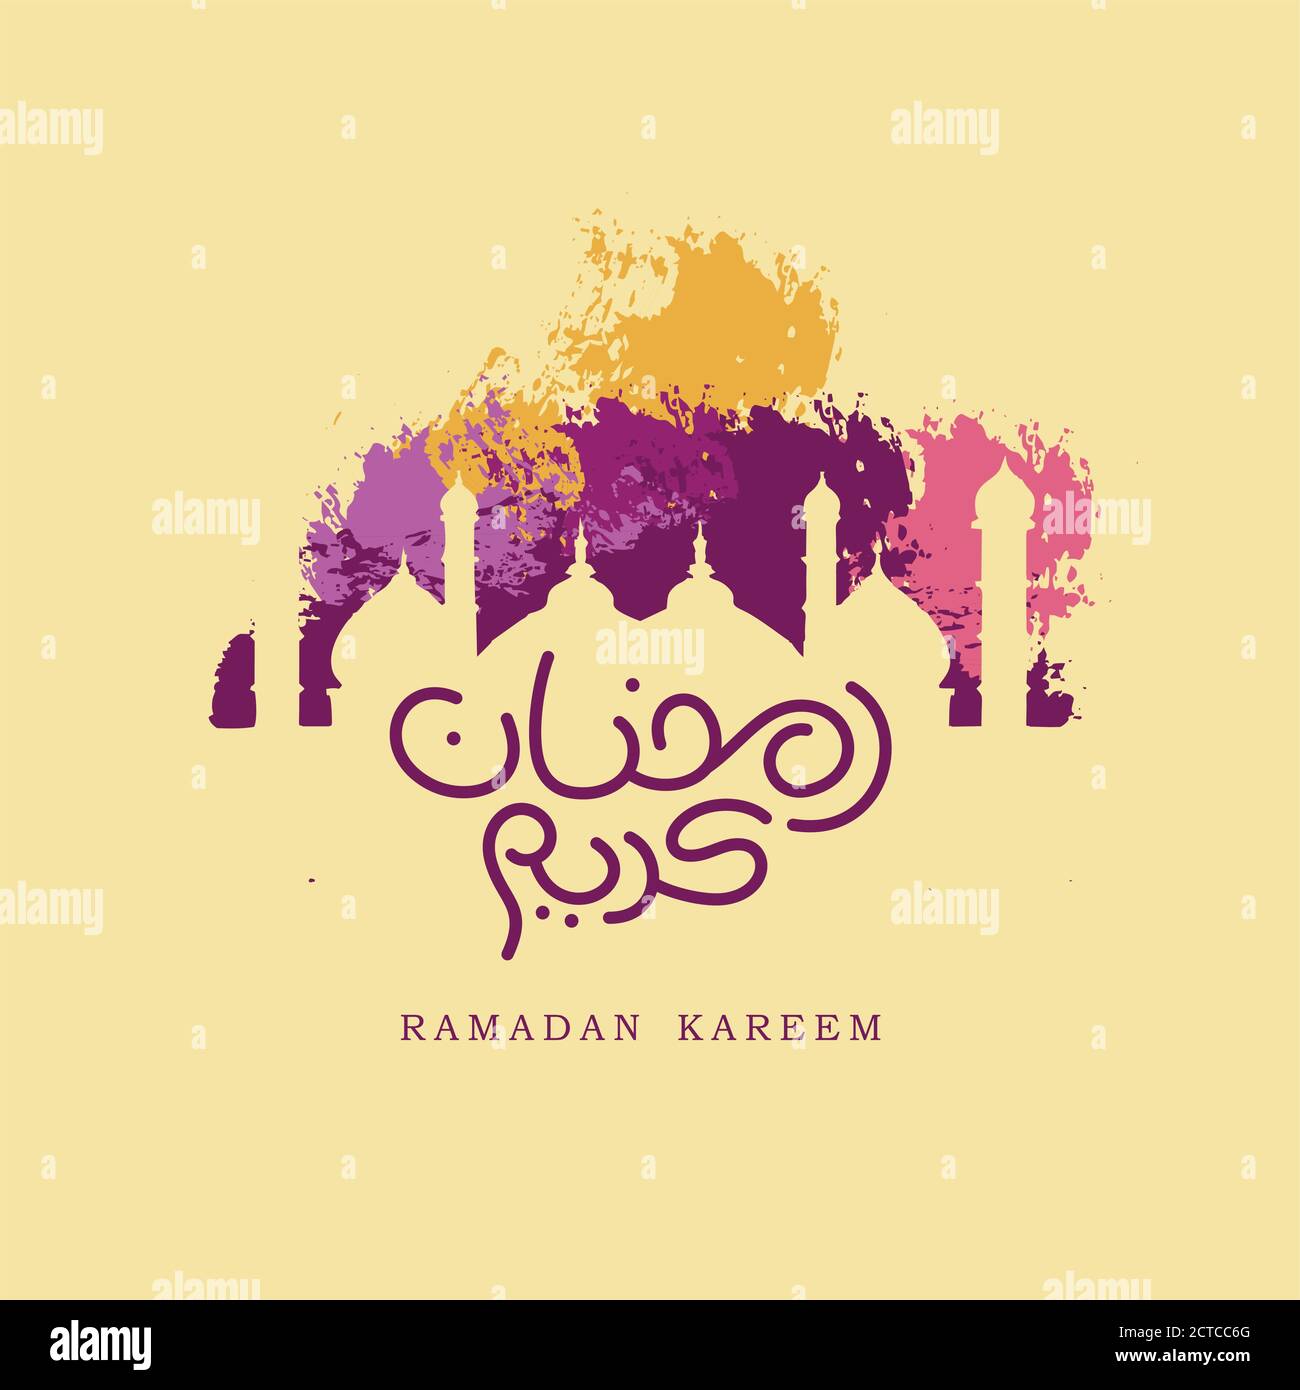 Ramadan Kareem Design Arabisch und Englisch Text Elfenbein Hintergrund mit masjid-Farbe Stock Vektor